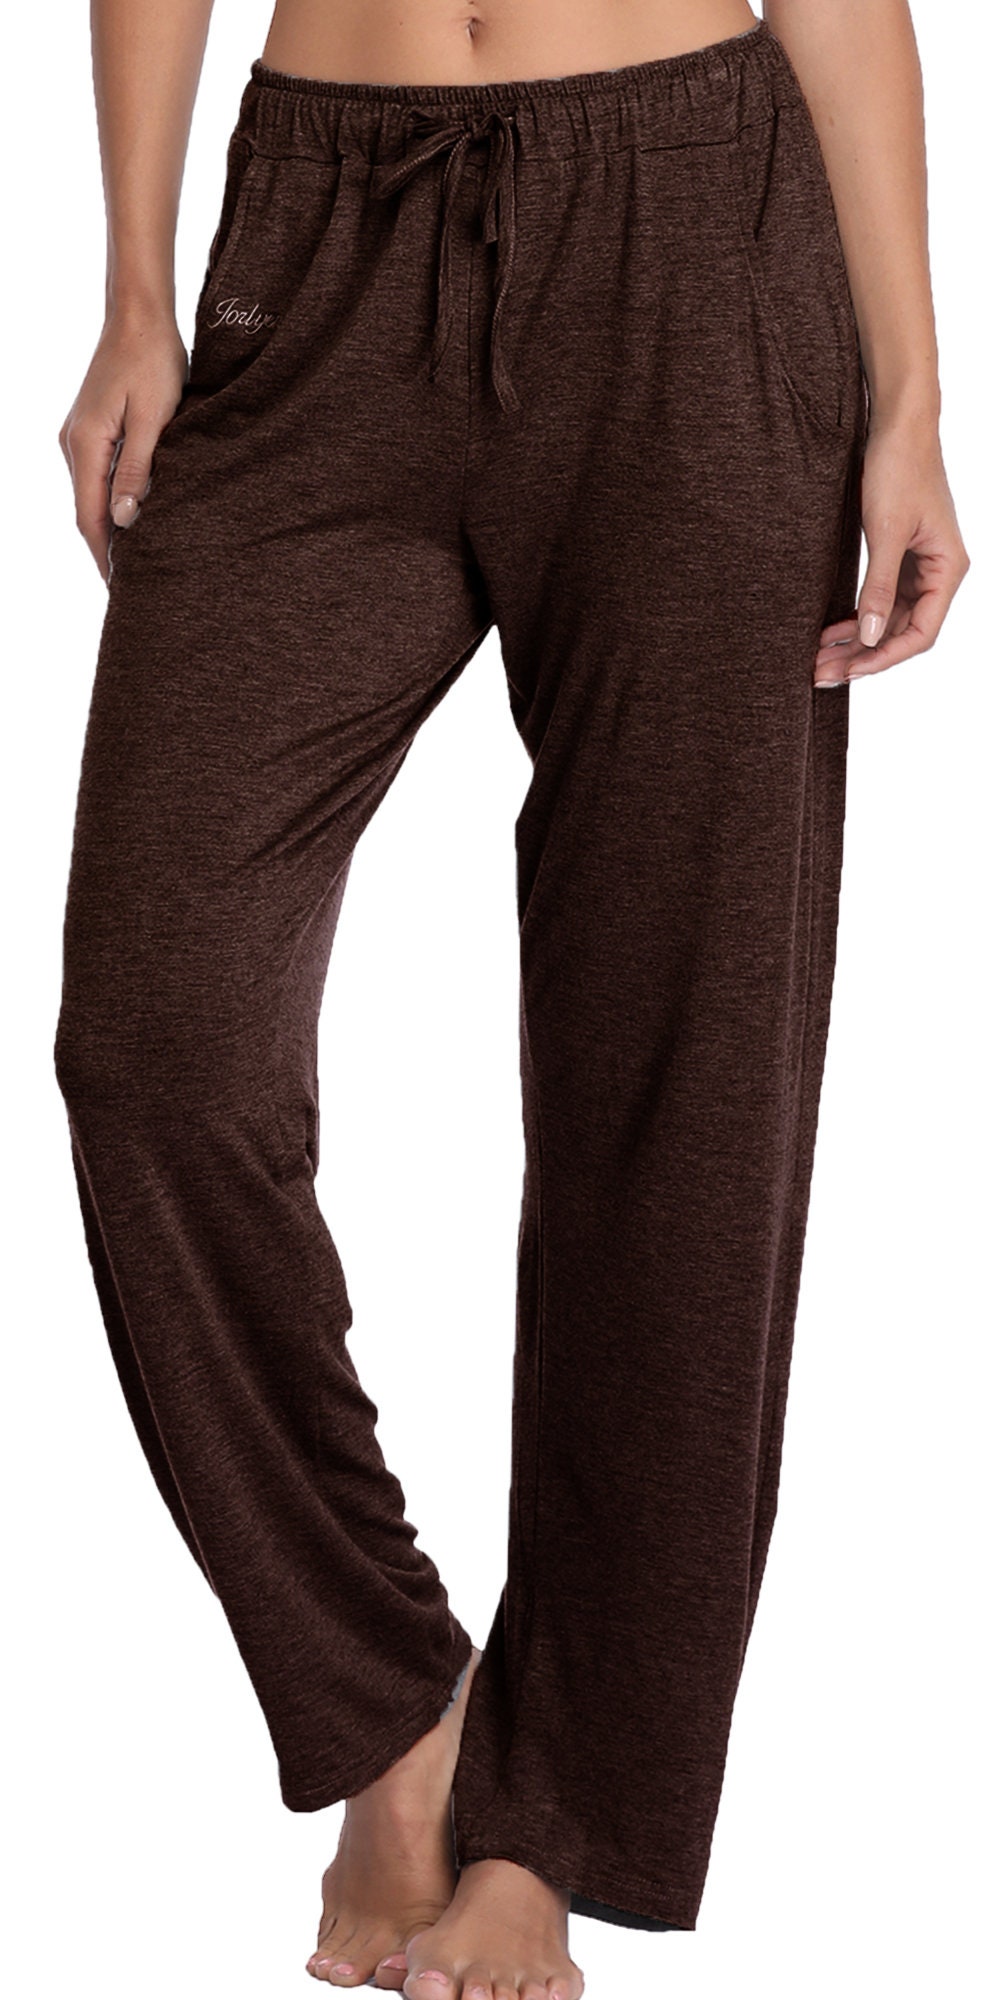 Knsbk Bootcut Yoga Pants for Women with Hidden Pockets High Waist Workout  Pants Tummy Control Dress Bootleg Work Pants